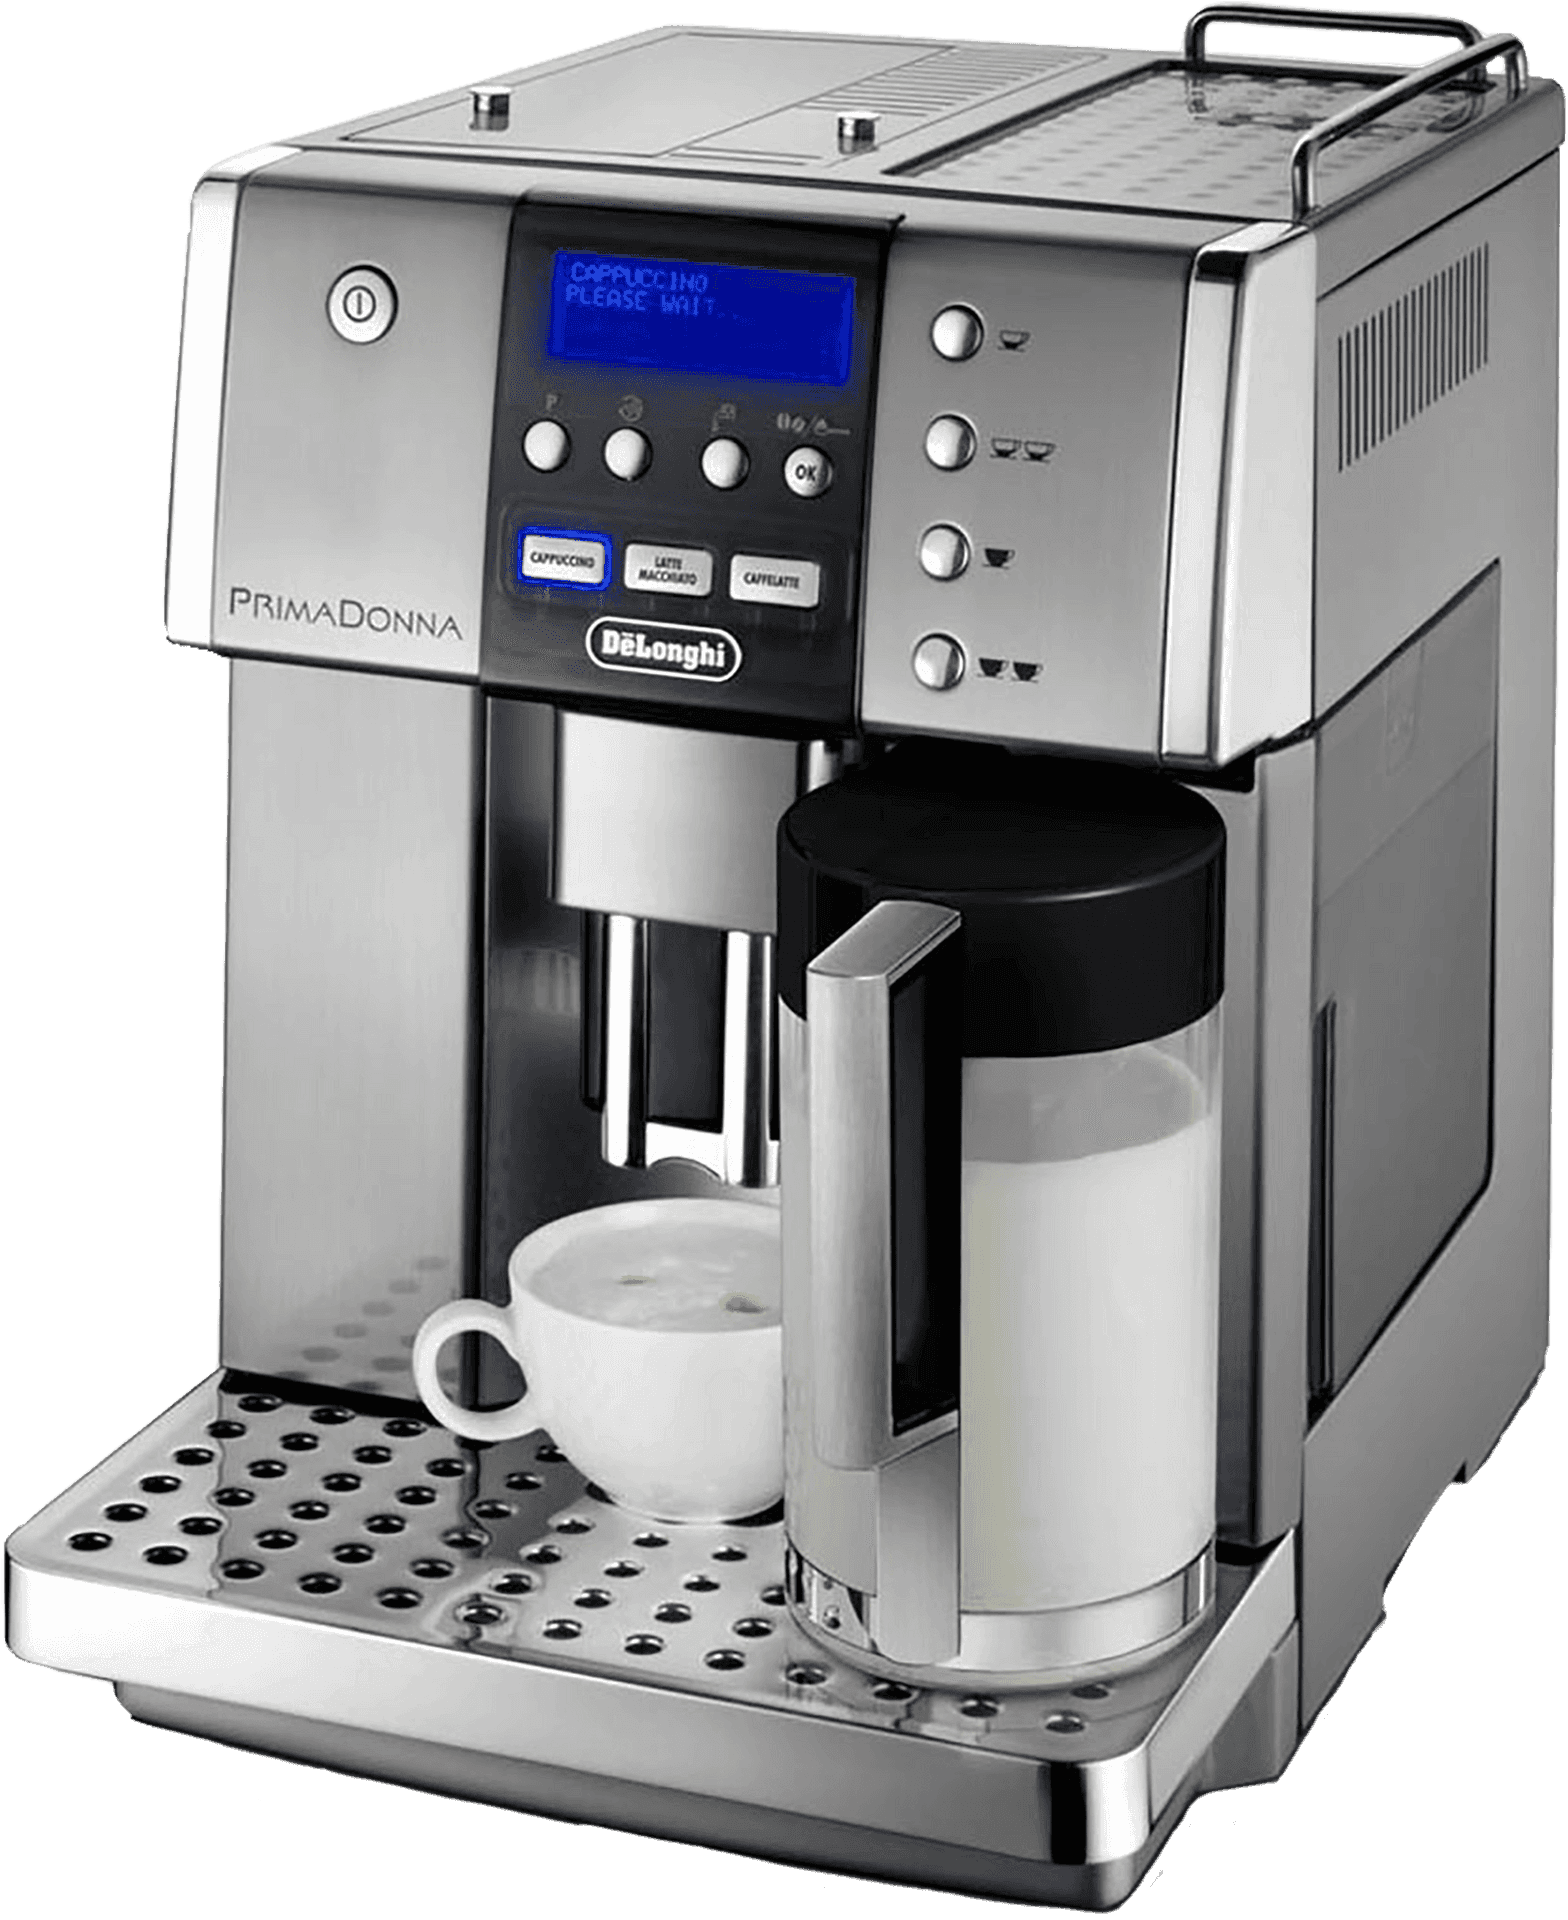 Delonghi Prima Donna Automatic Espresso Machine PNG